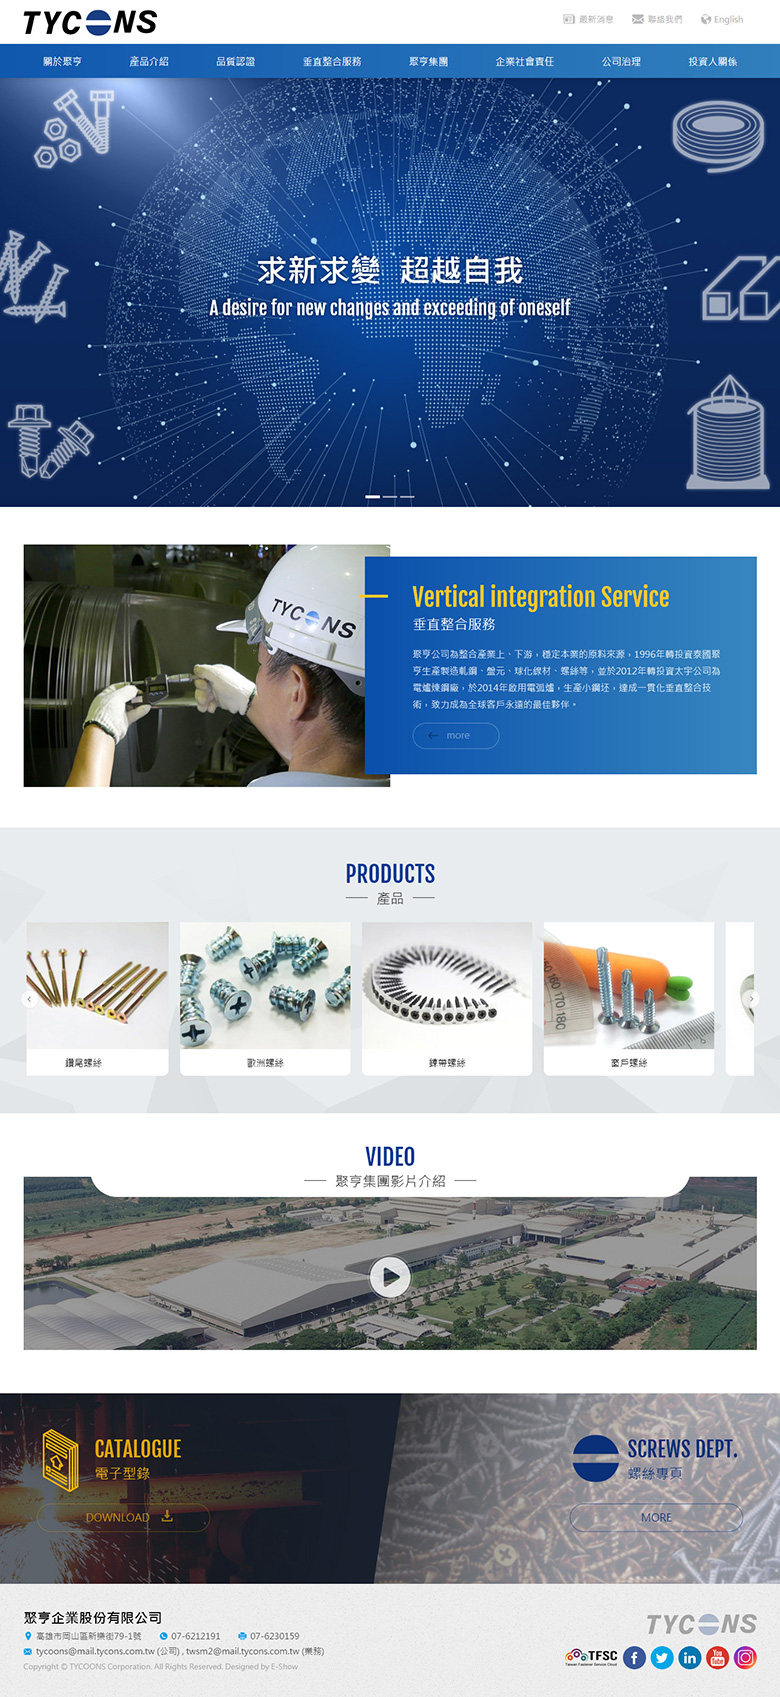 聚亨企業股份有限公司 響應式企業網站設計
